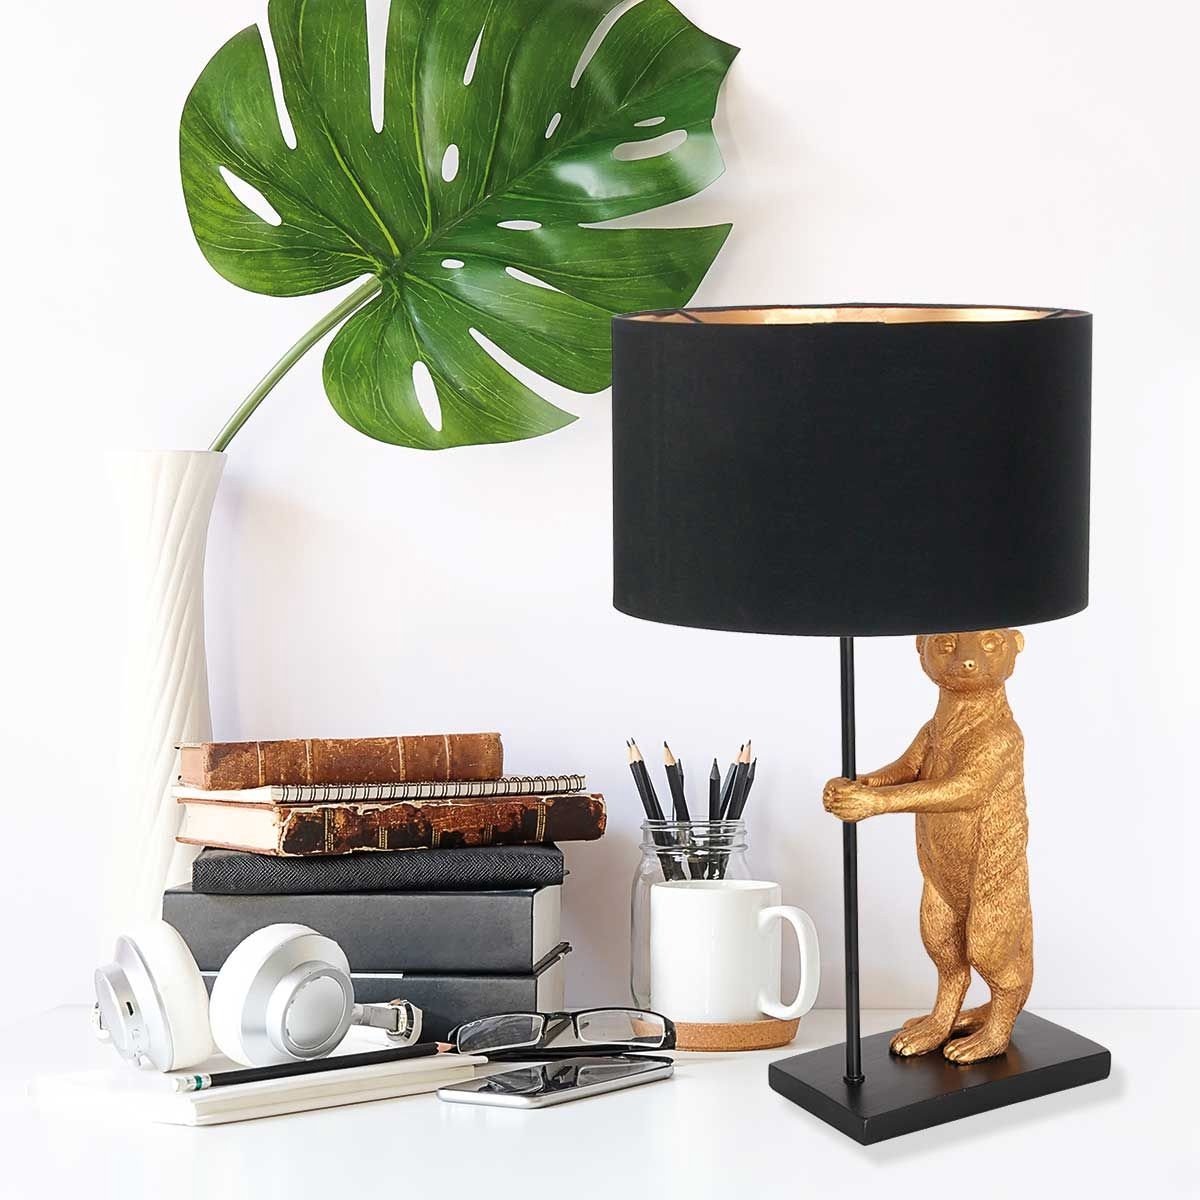 Anne Light & Home Animaux tafellamp - gouden stokstaart - 50 cm hoog - Ø30 cm - E27 - zwart